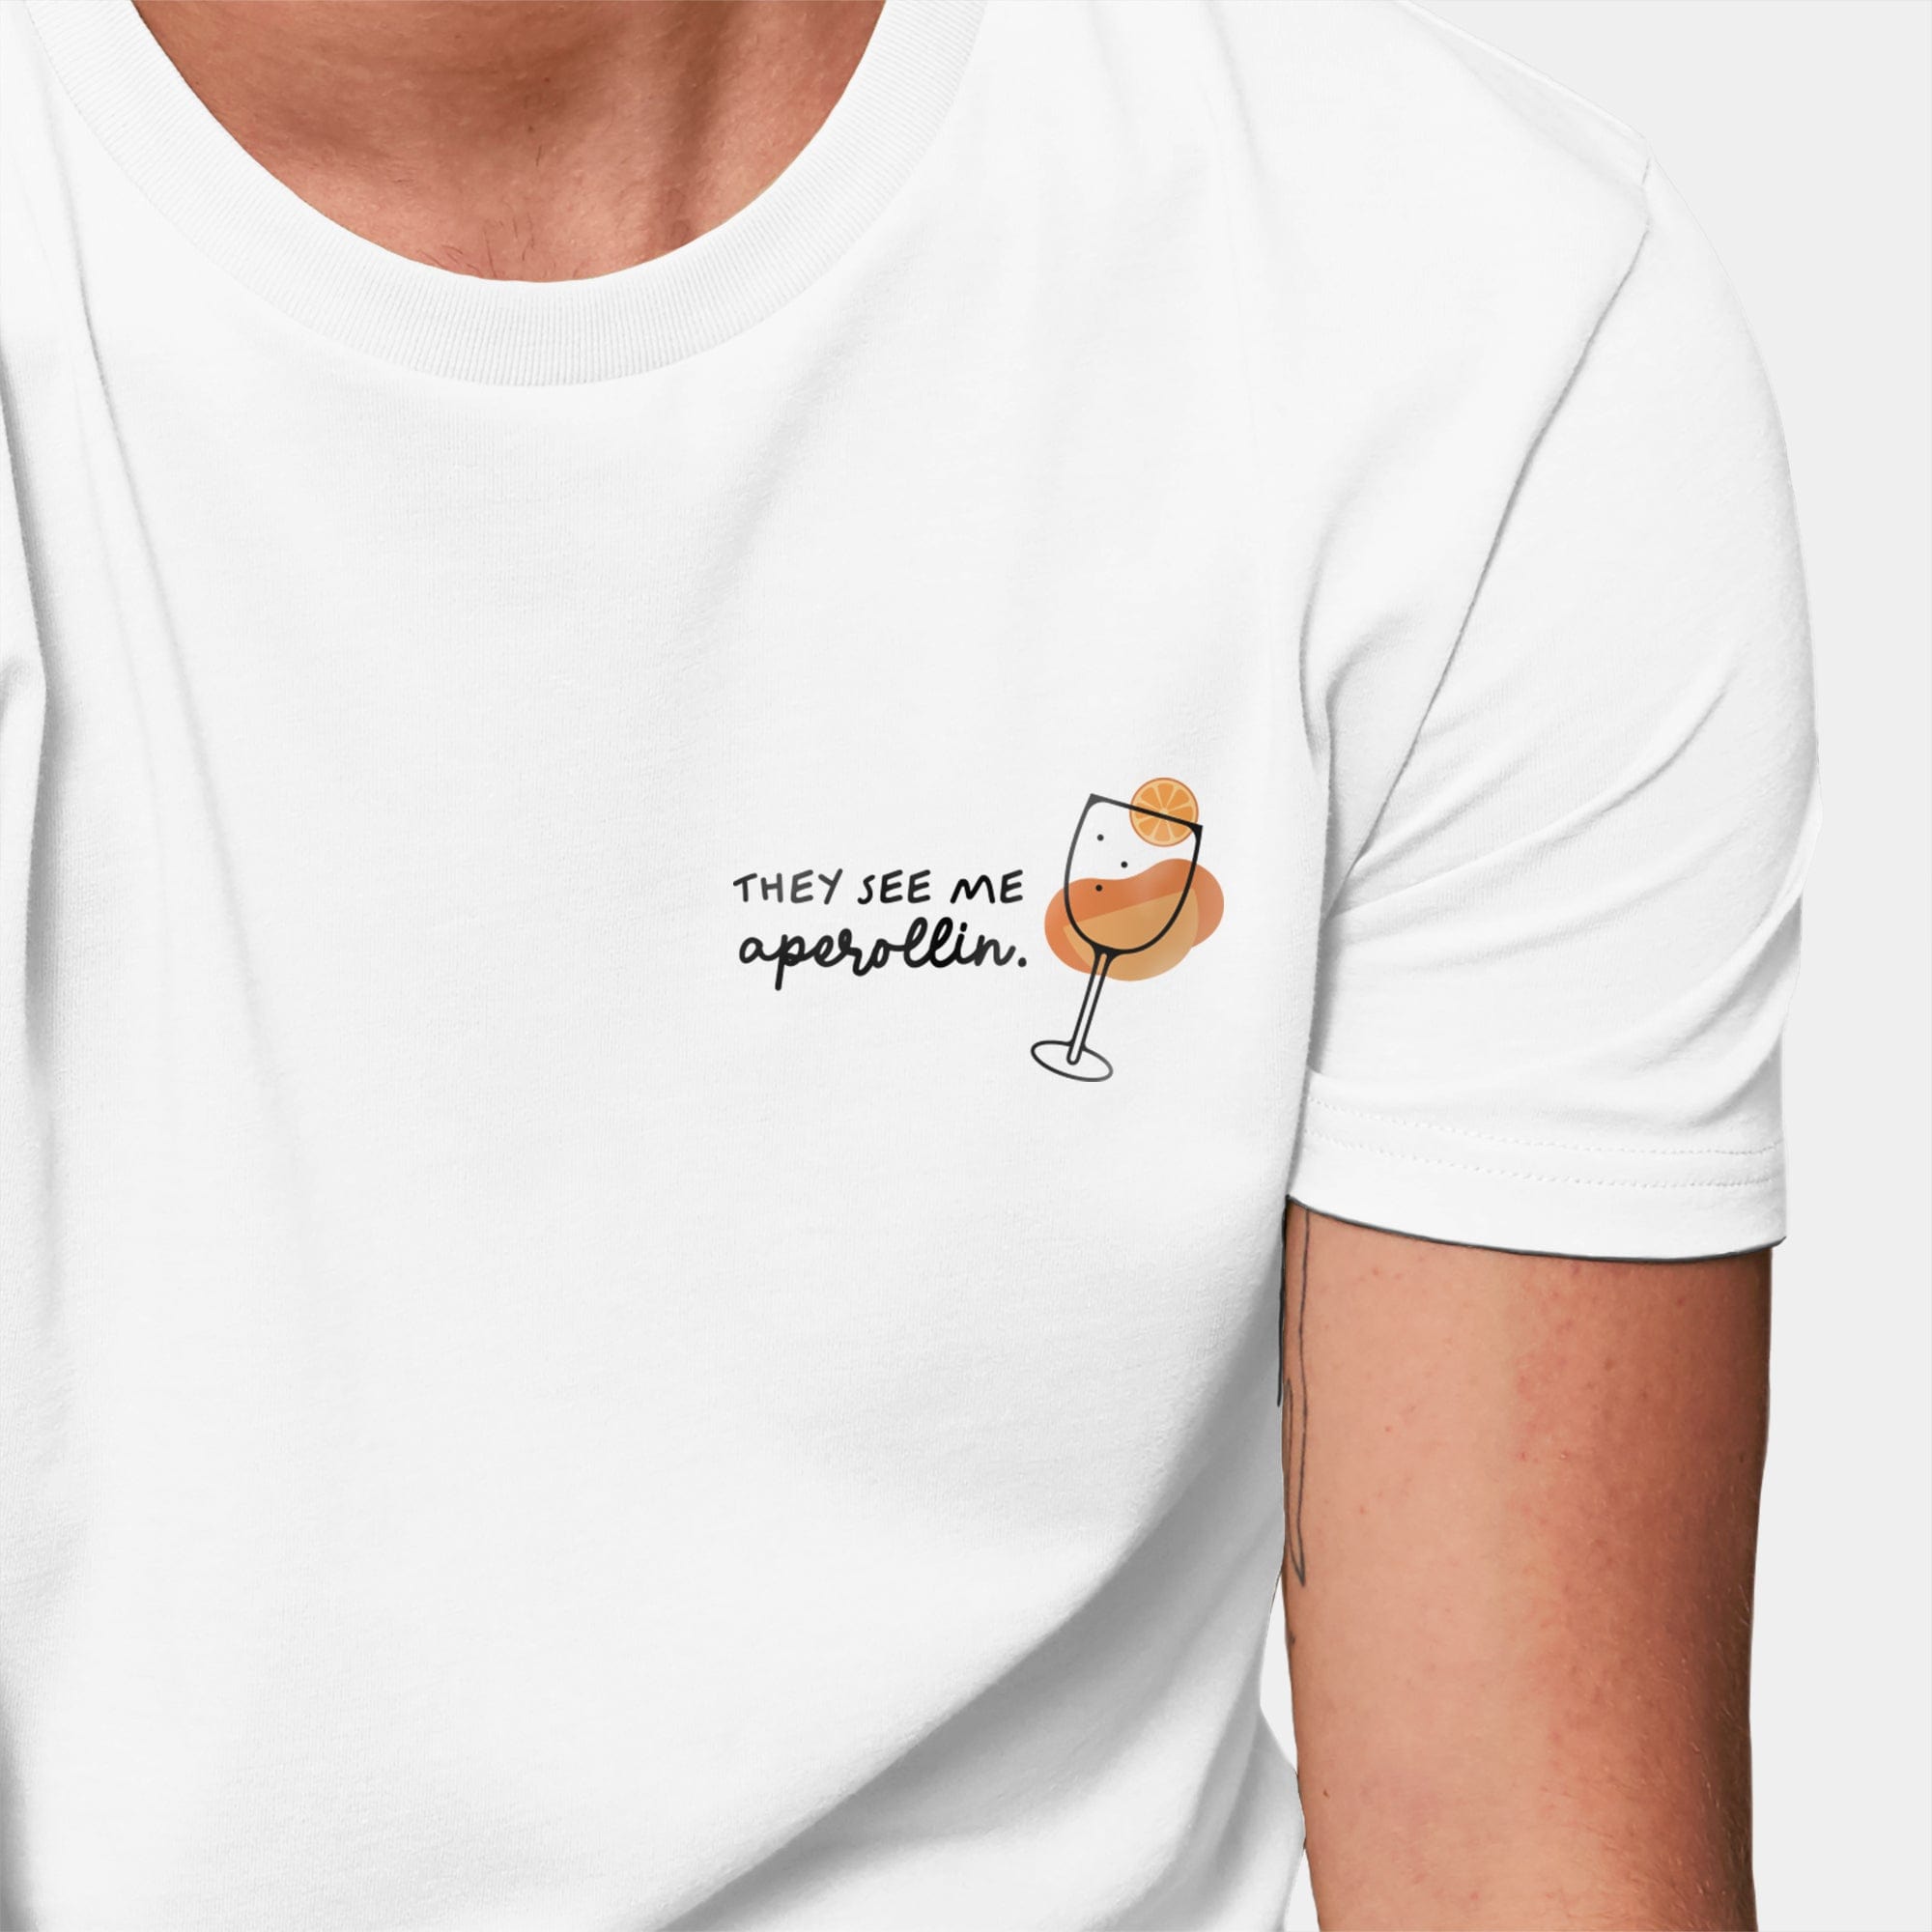 HEITER & LÄSSIG T-Shirt "Aperollin" S / weiß - aus nachhaltiger und fairer Produktion